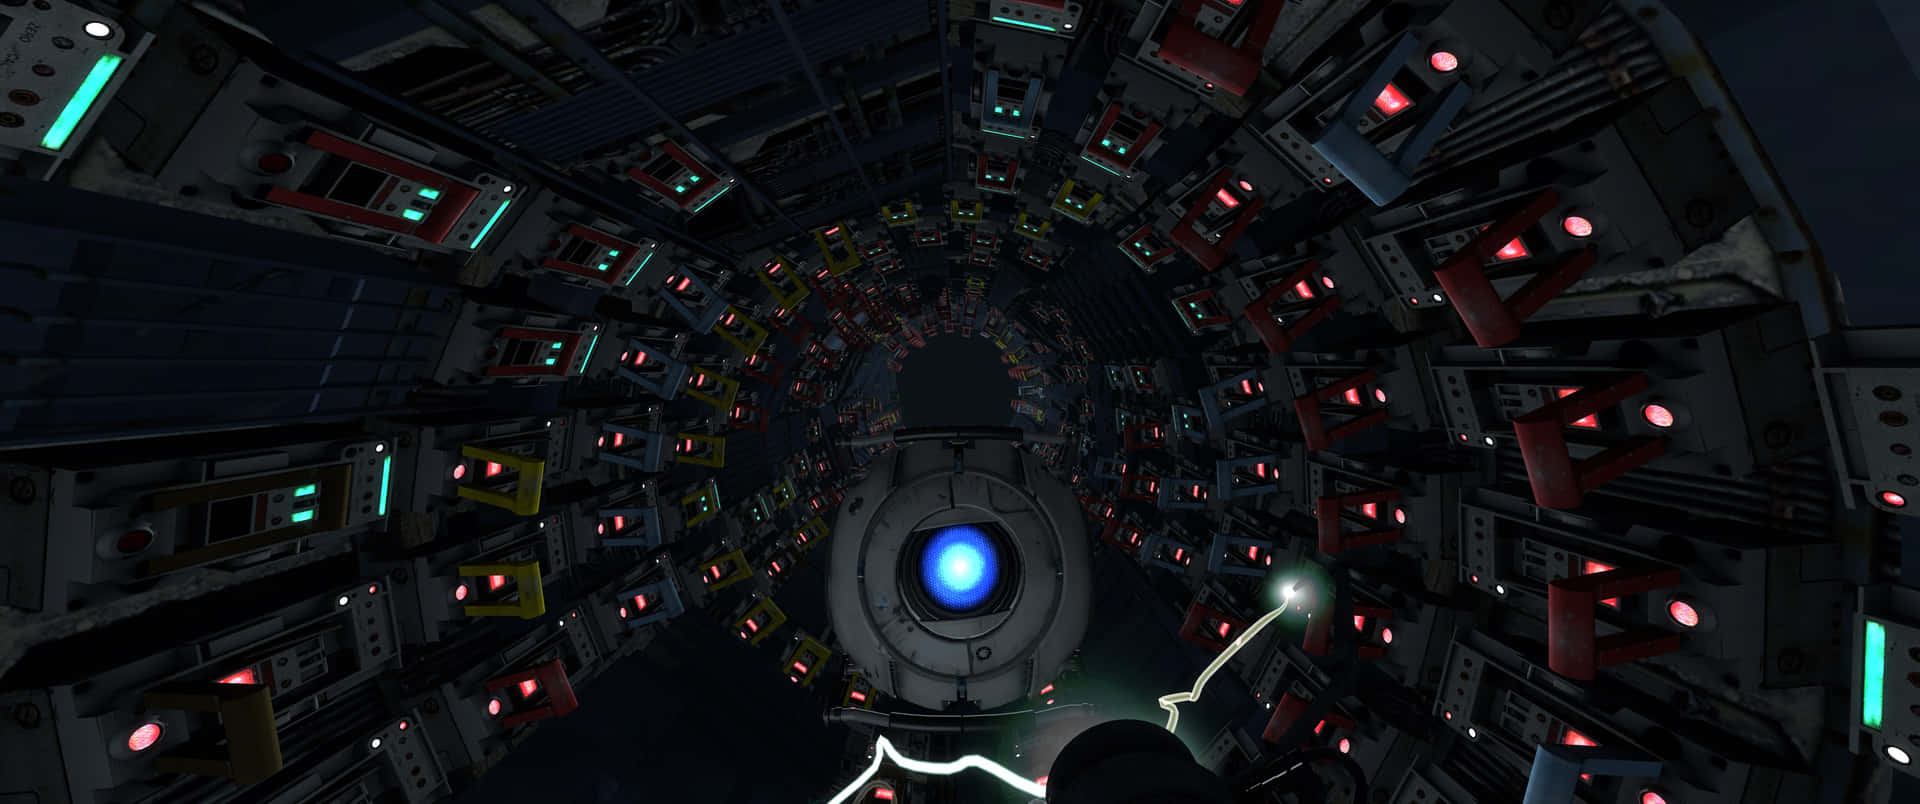 Unafantastica Foto Di Portal 2 Con Una Risoluzione Di 3440x1440p